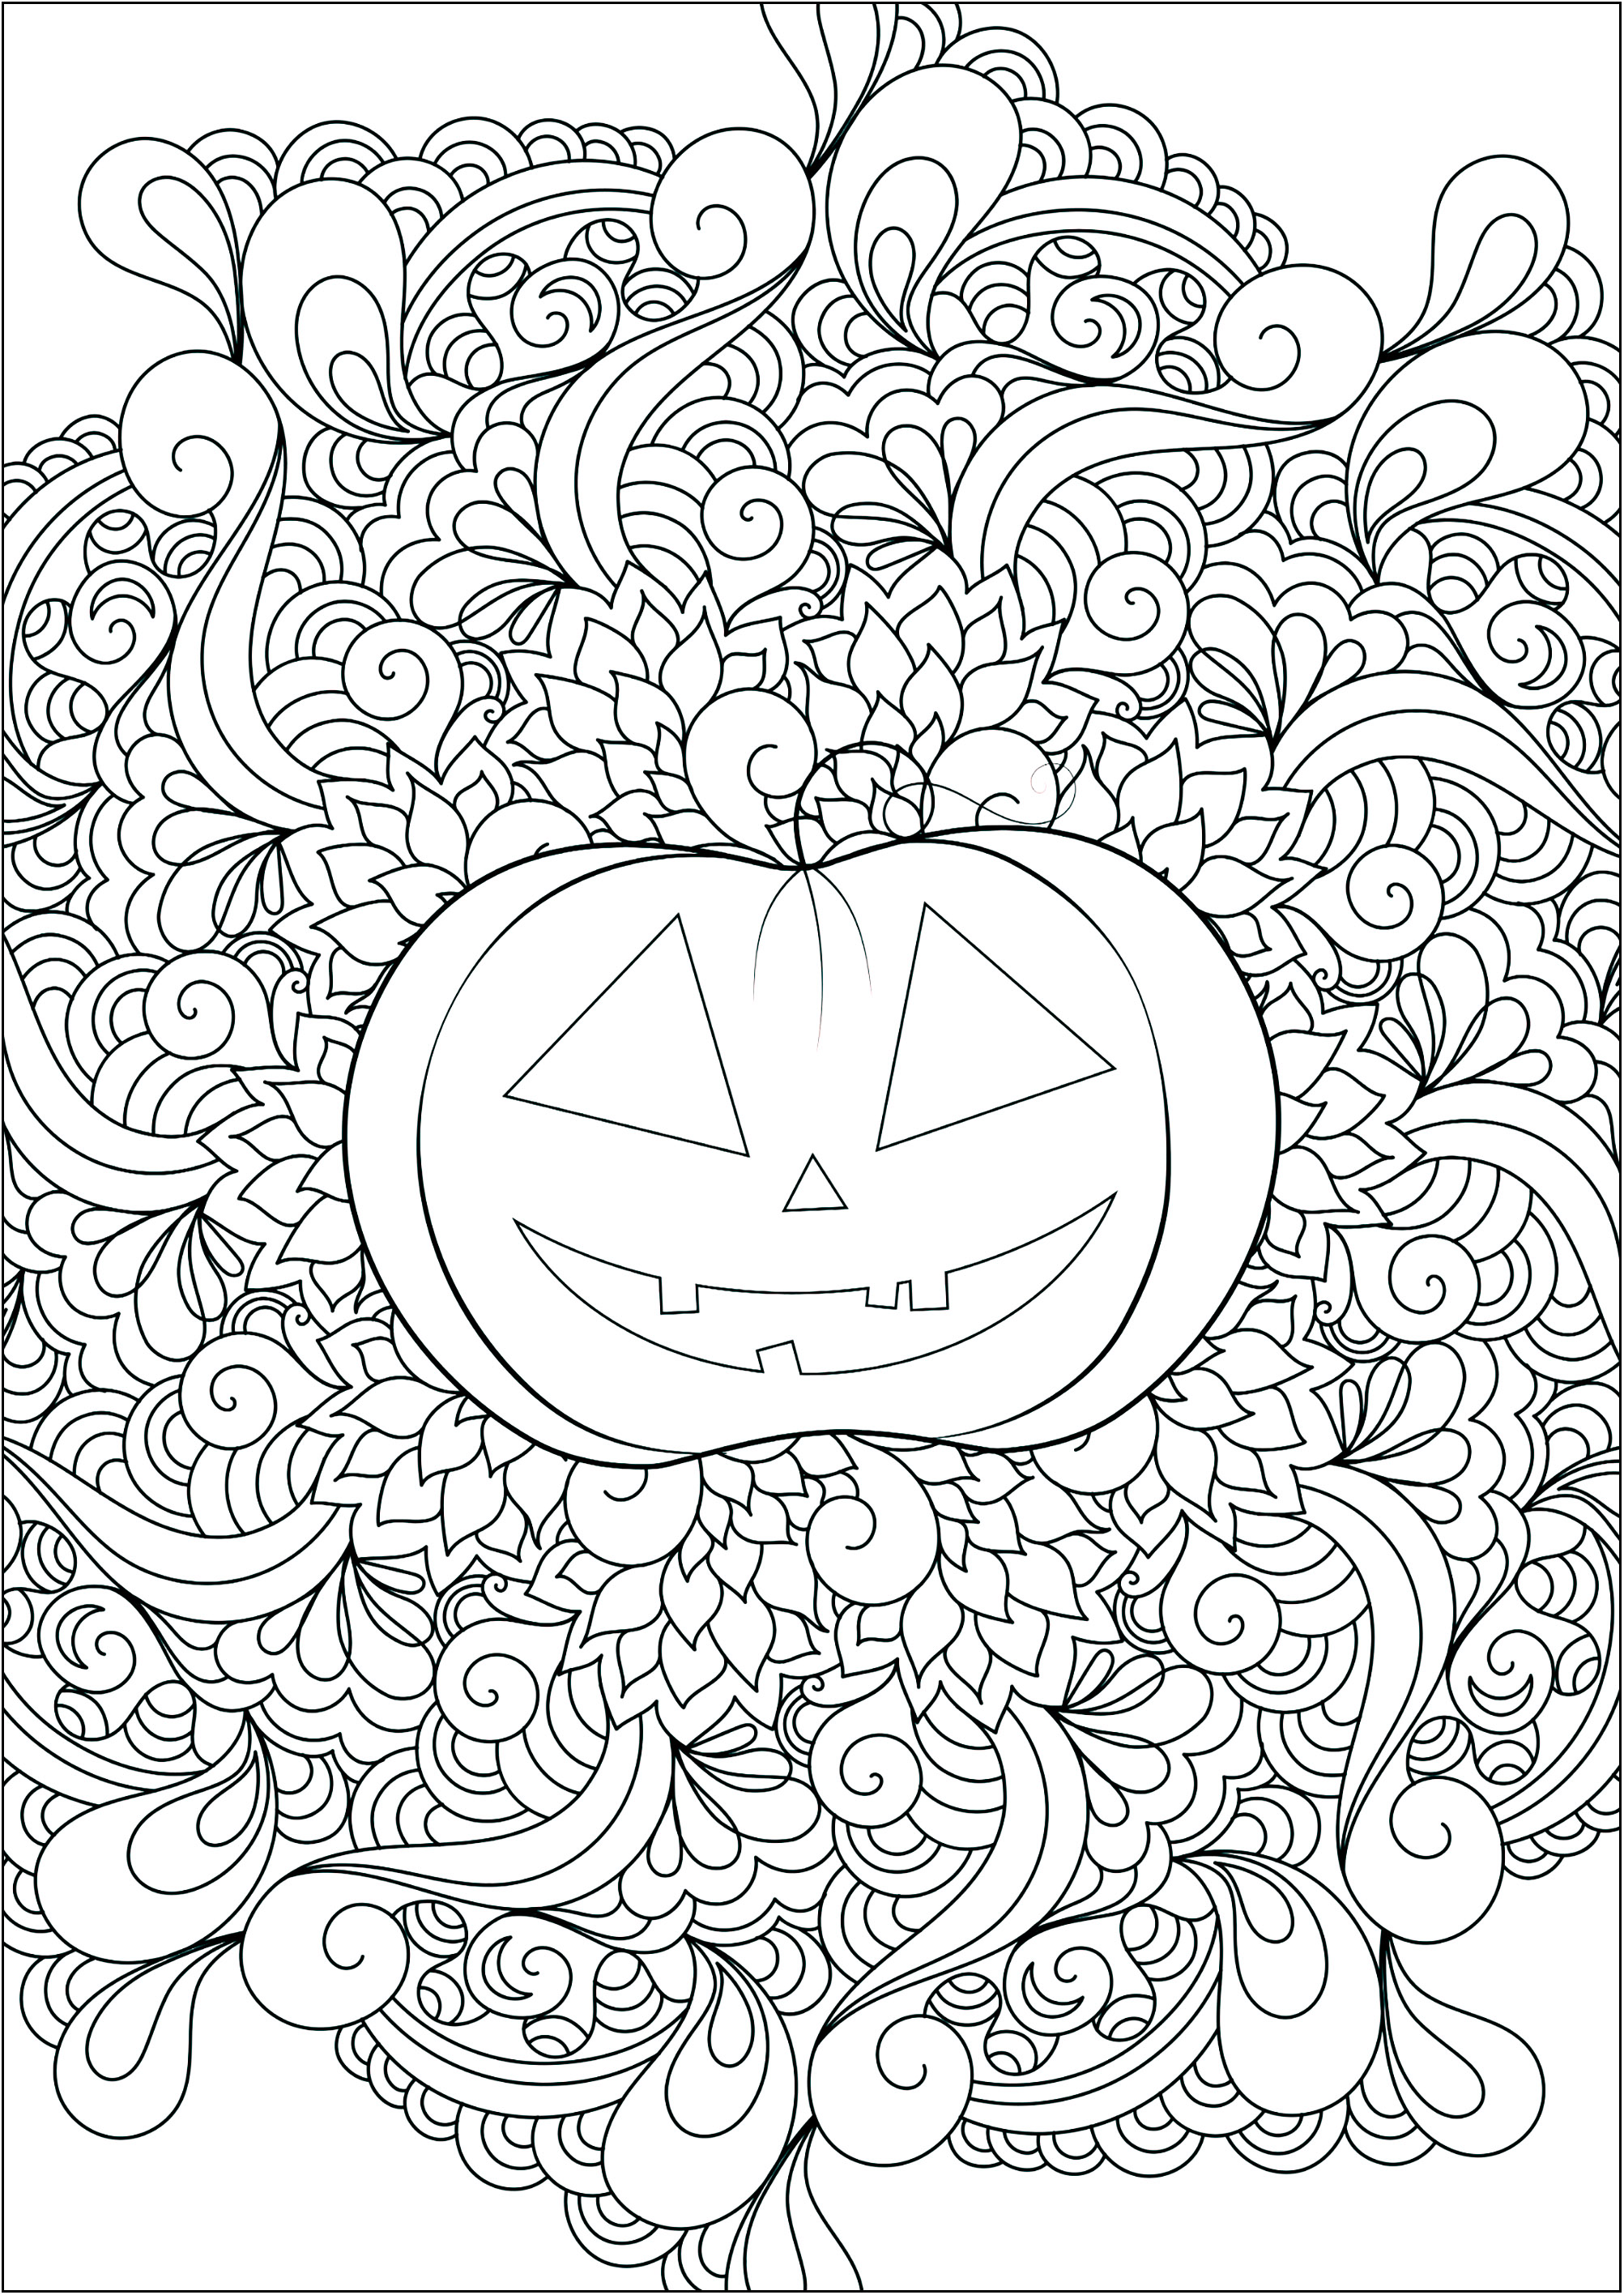 Abóbora bonita com motivos abstractos no centro. Um livro para colorir perfeito para celebrar o Halloween a cores .., Fonte : 123rf   Artista : Veronikaby